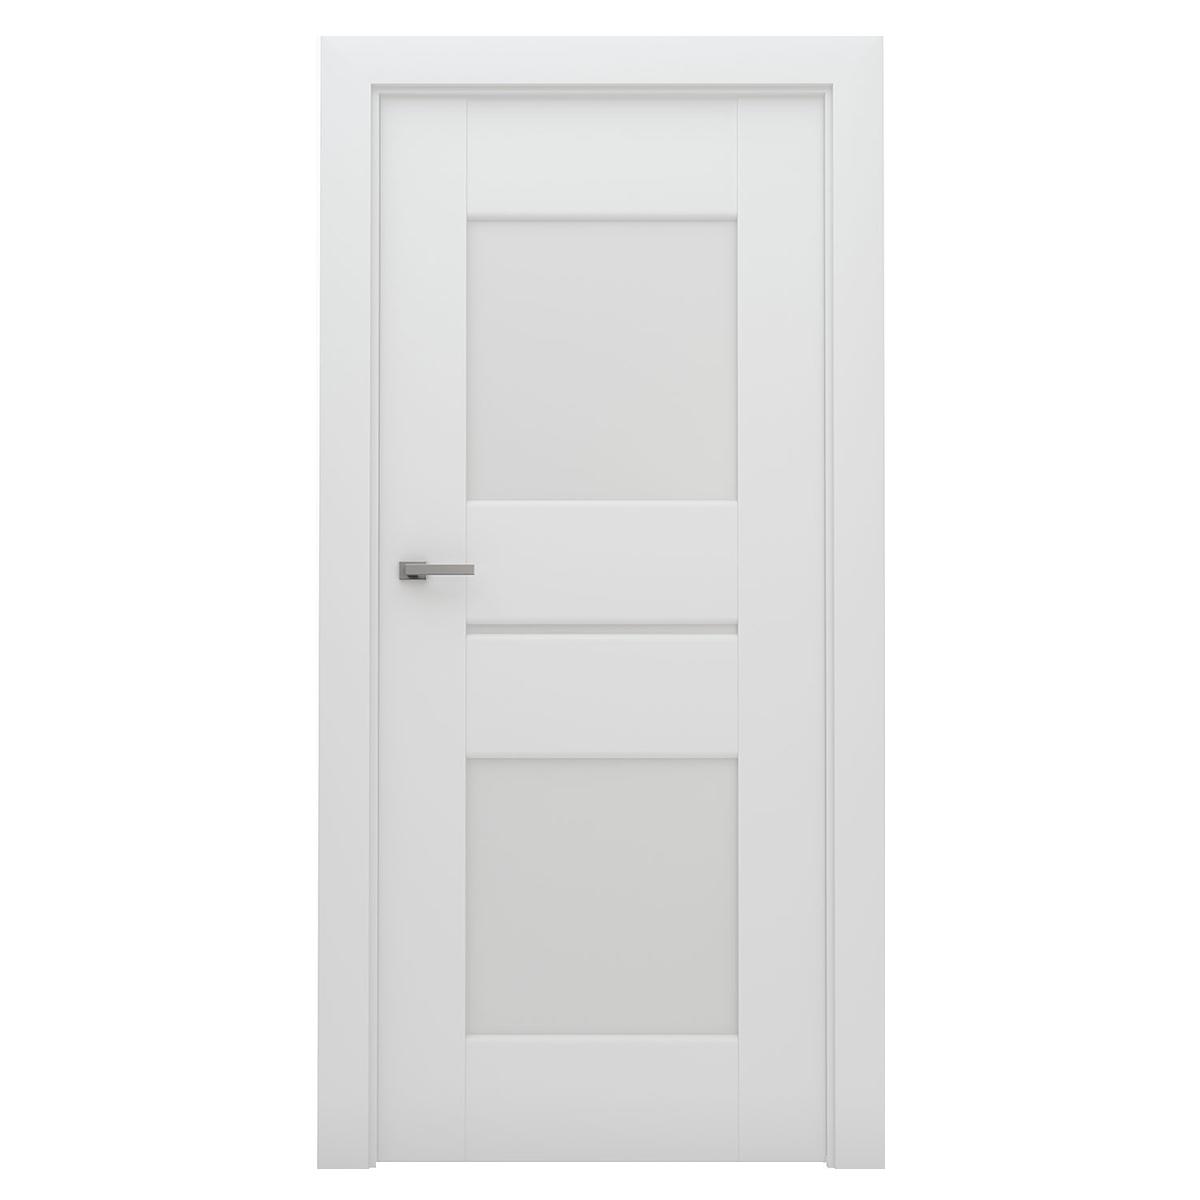 INOVO 5 Door